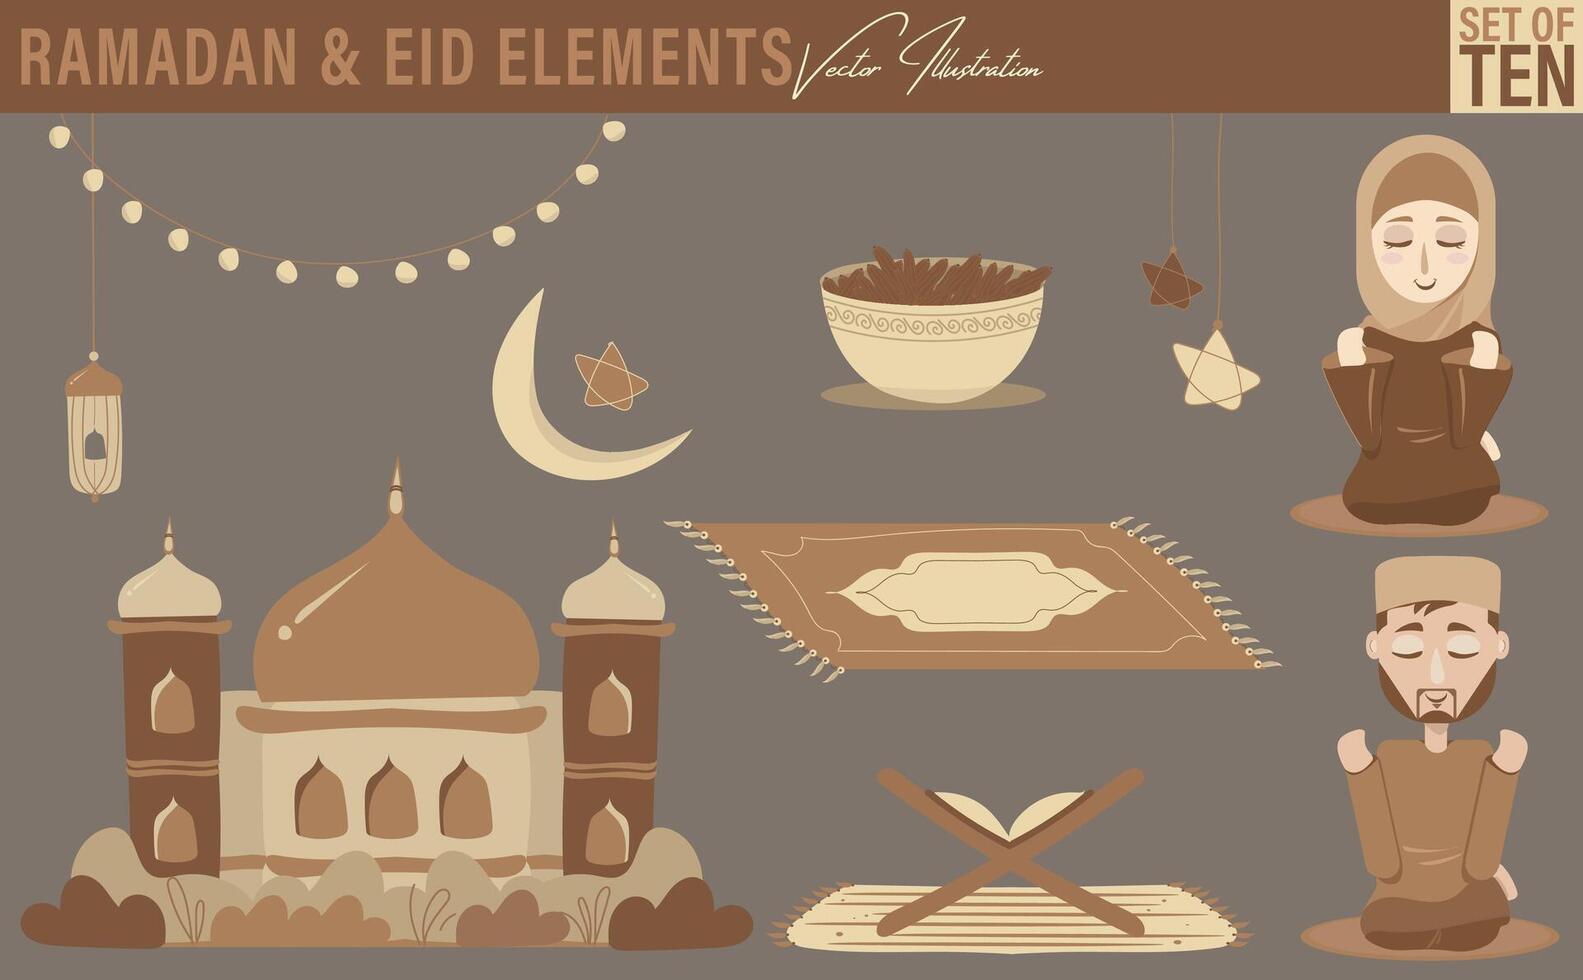 Ramadan und eid Elemente Illustrationen. einstellen von zehn beinhaltet männlich und weiblich Zeichen beten, Moschee, Halbmond Mond, Star Beleuchtung, Laterne, Fee Licht, heilig Koran im ein Stand, Gebet Matte, und Termine vektor